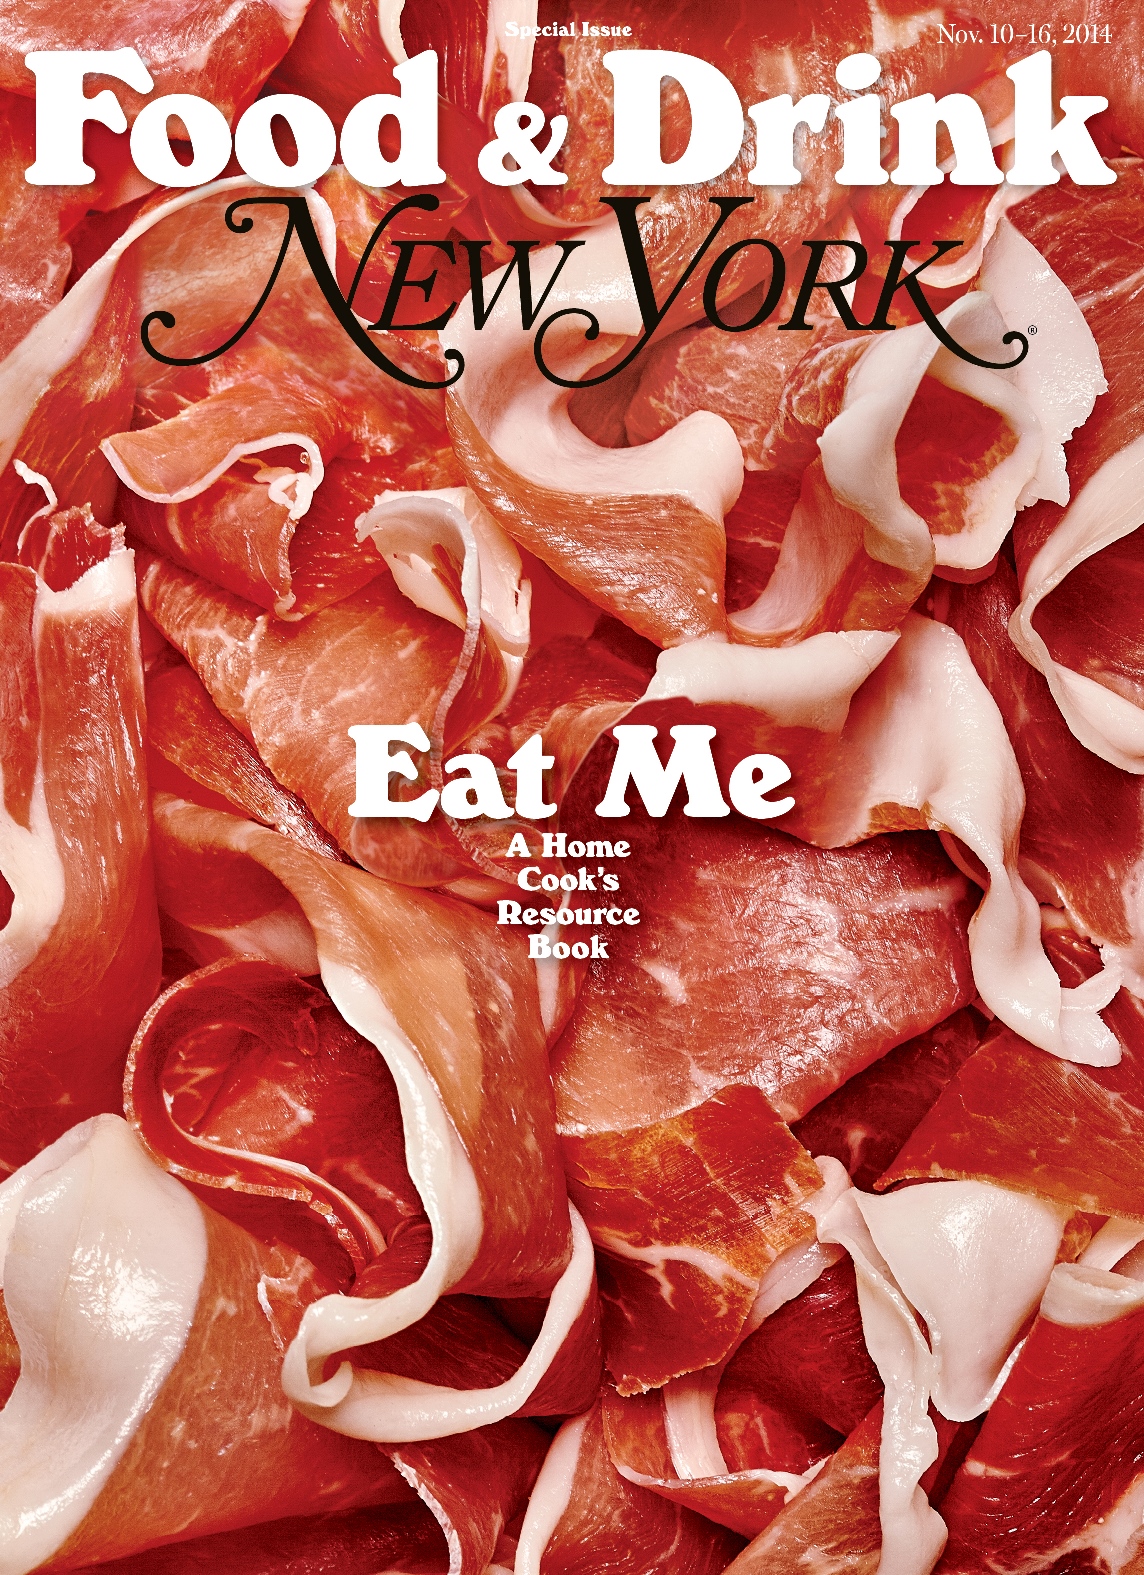 New York-November 10-16, 2014, "Eat Me"